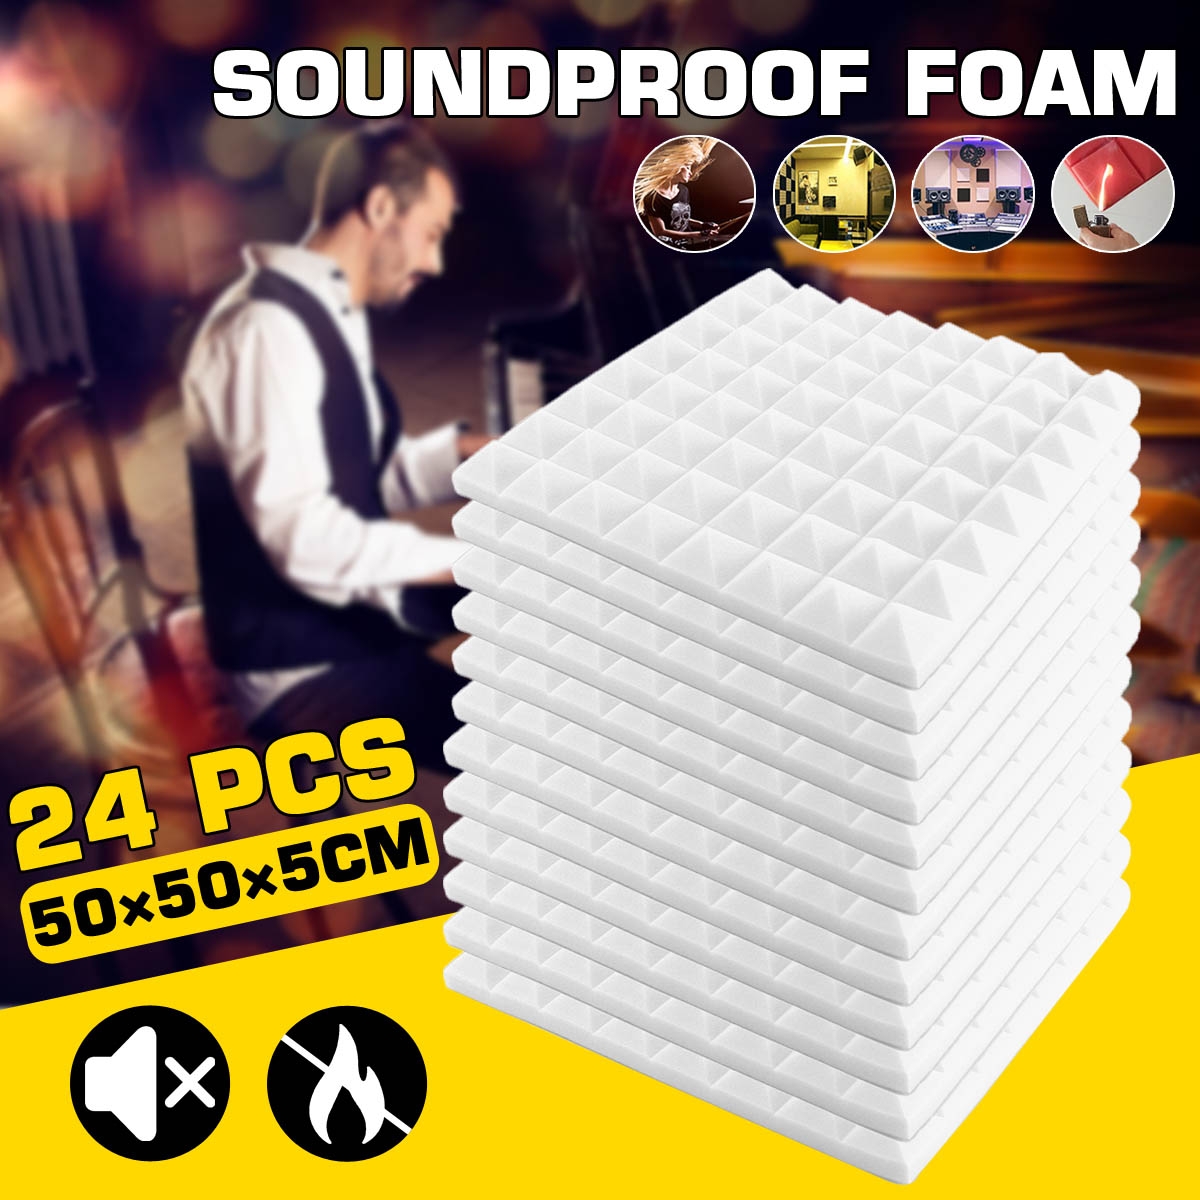 24PCS 50x50x5cm Studio Acoustic Soundproof Foam Sound Absorption Treatment Panel Tile Protective Sponge